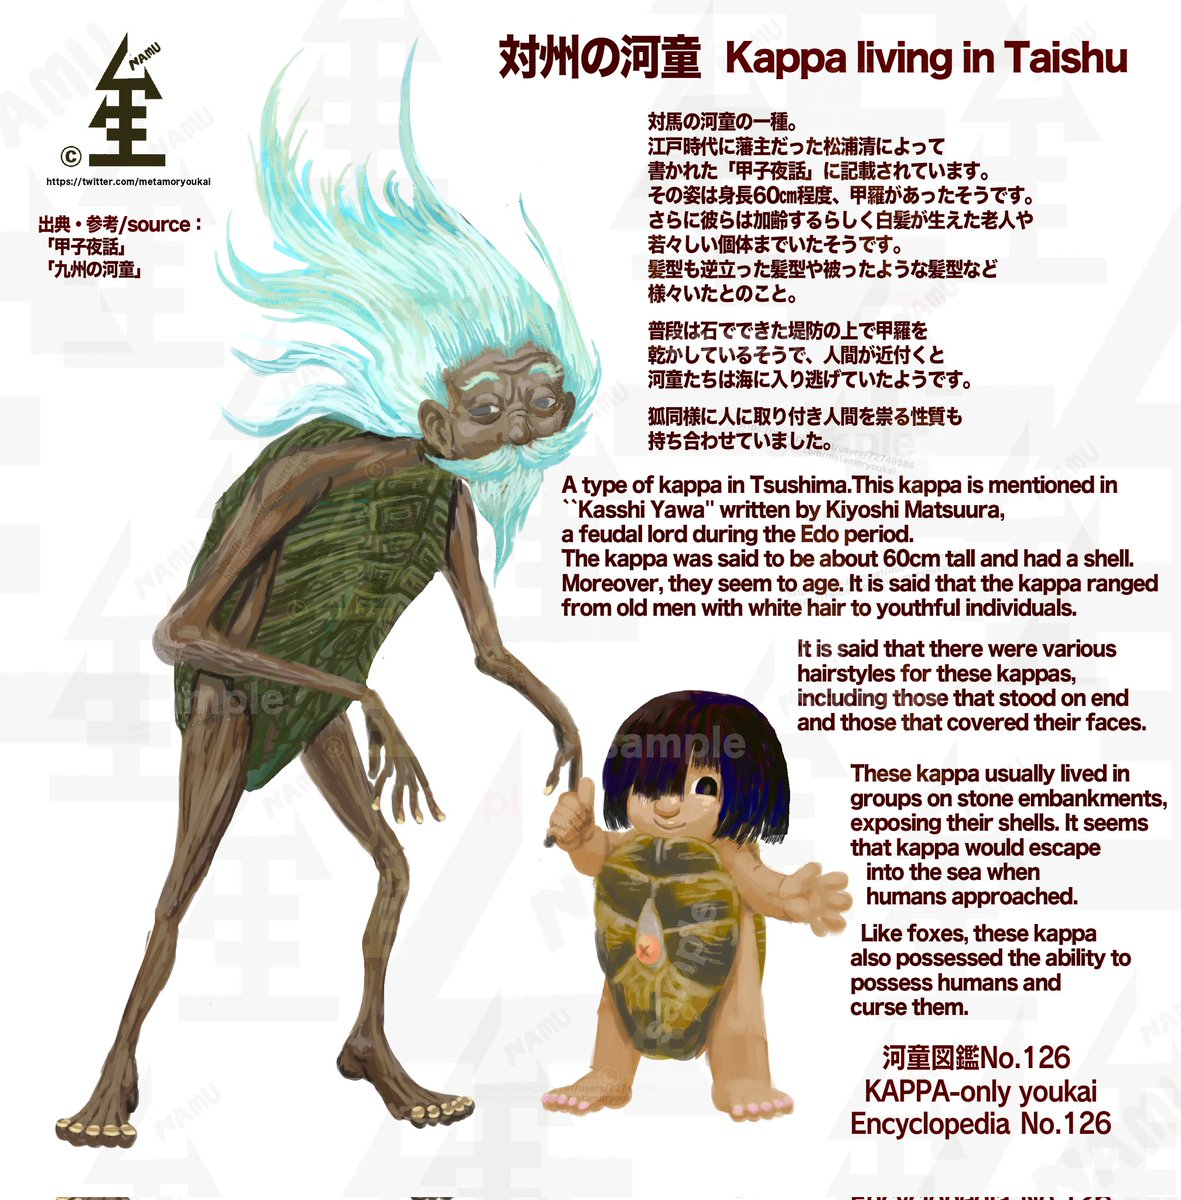 遅れましたが今日は対州の河童です！
藩主が言及した老人も子供も集団で甲羅背負ってる髪型自由河童。
今日で一応本にすると3冊目の折り返し地点です！また夏頃に2冊目を考えてますのでまたご報告します！
kappa-only youkai Encyclopedia
No.126:Kappa living in Taishu

#yokai    #JapaneseFolklore